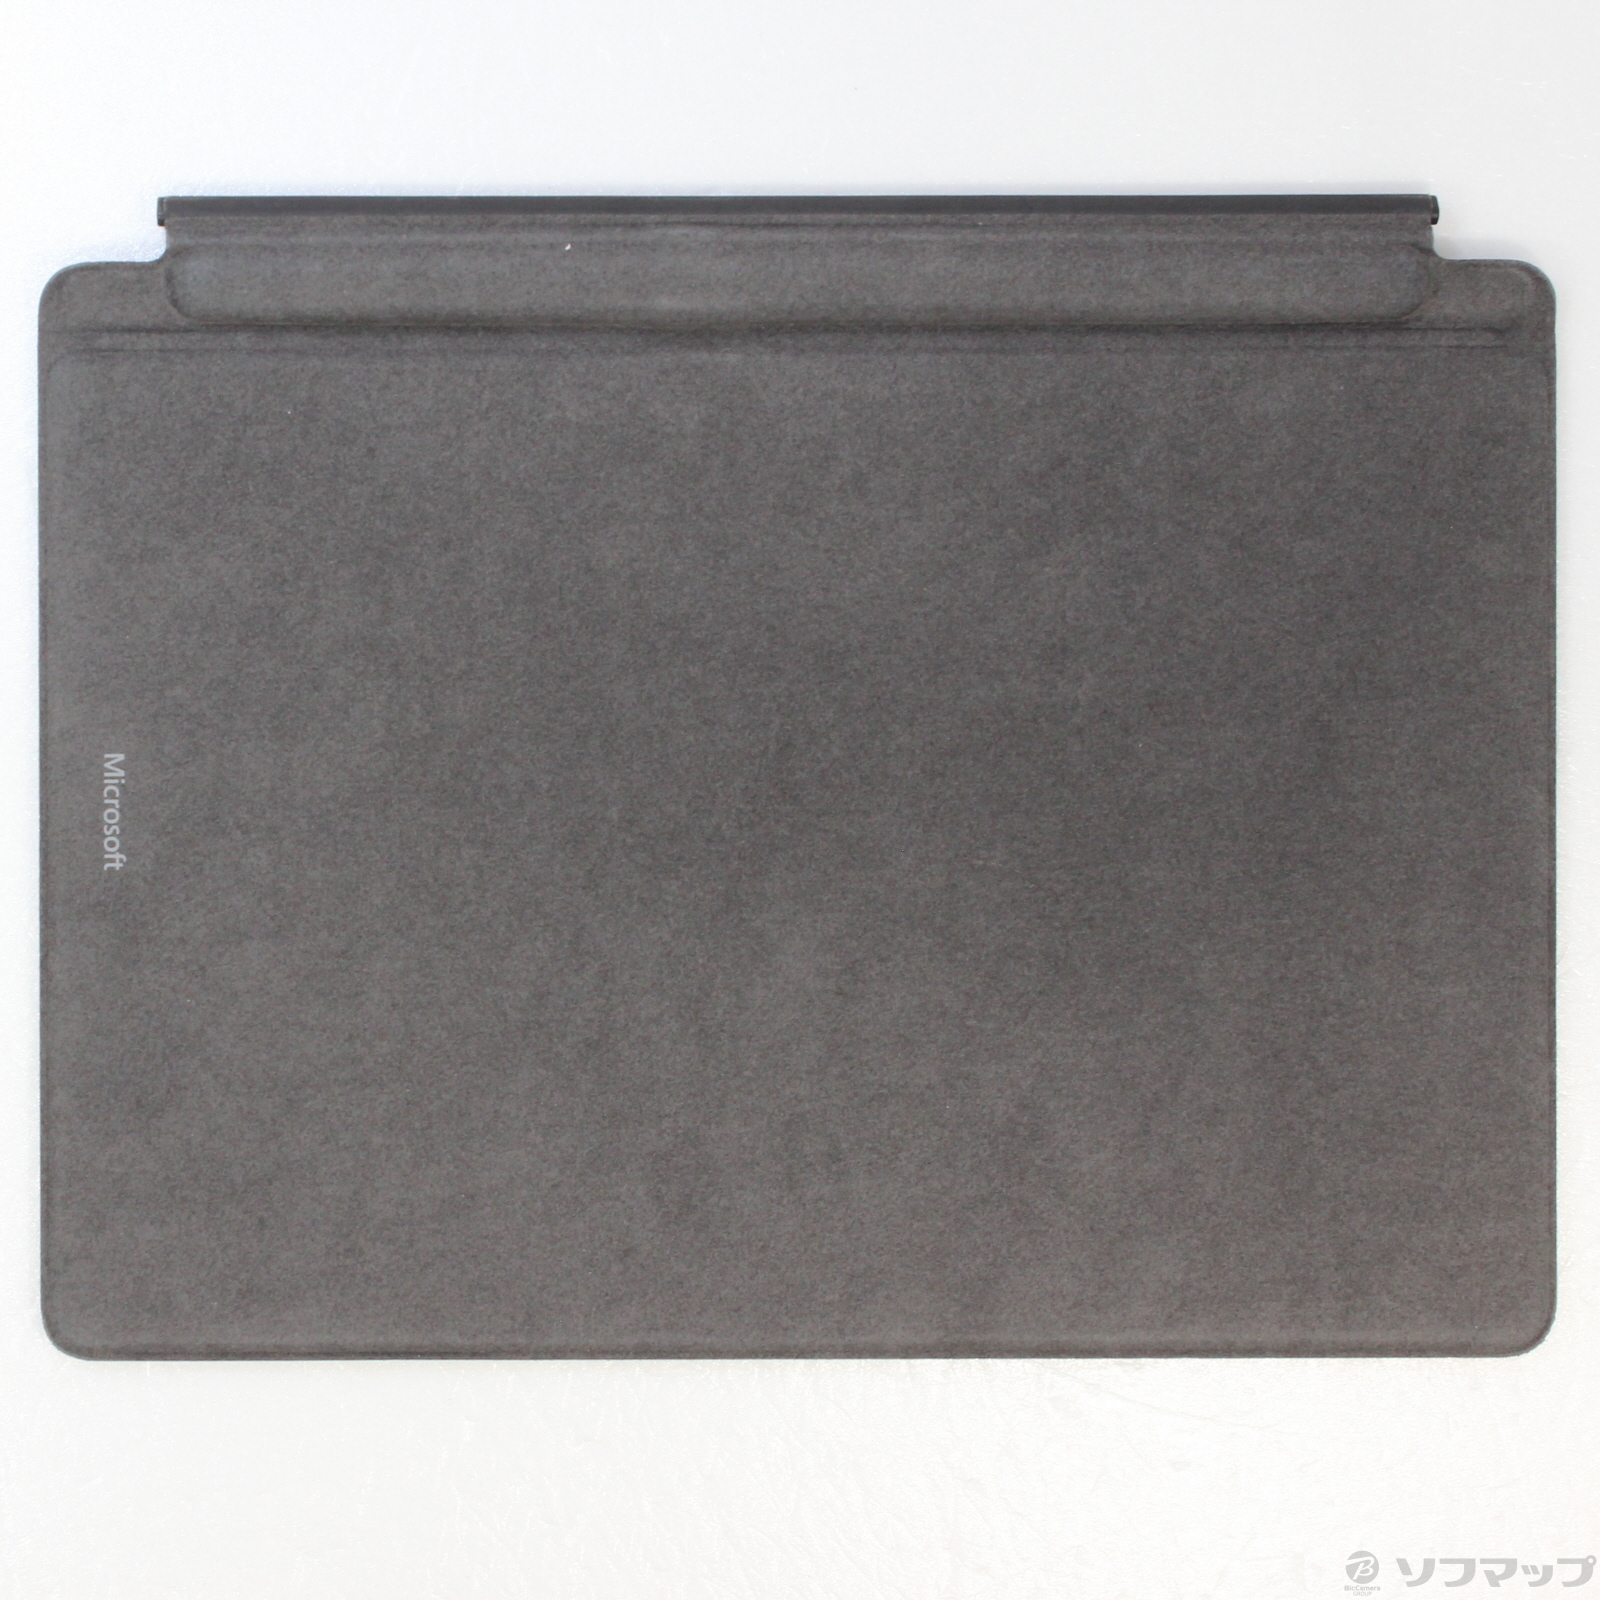 【中古】スリムペン2付き Surface Pro Signatune キーボード 